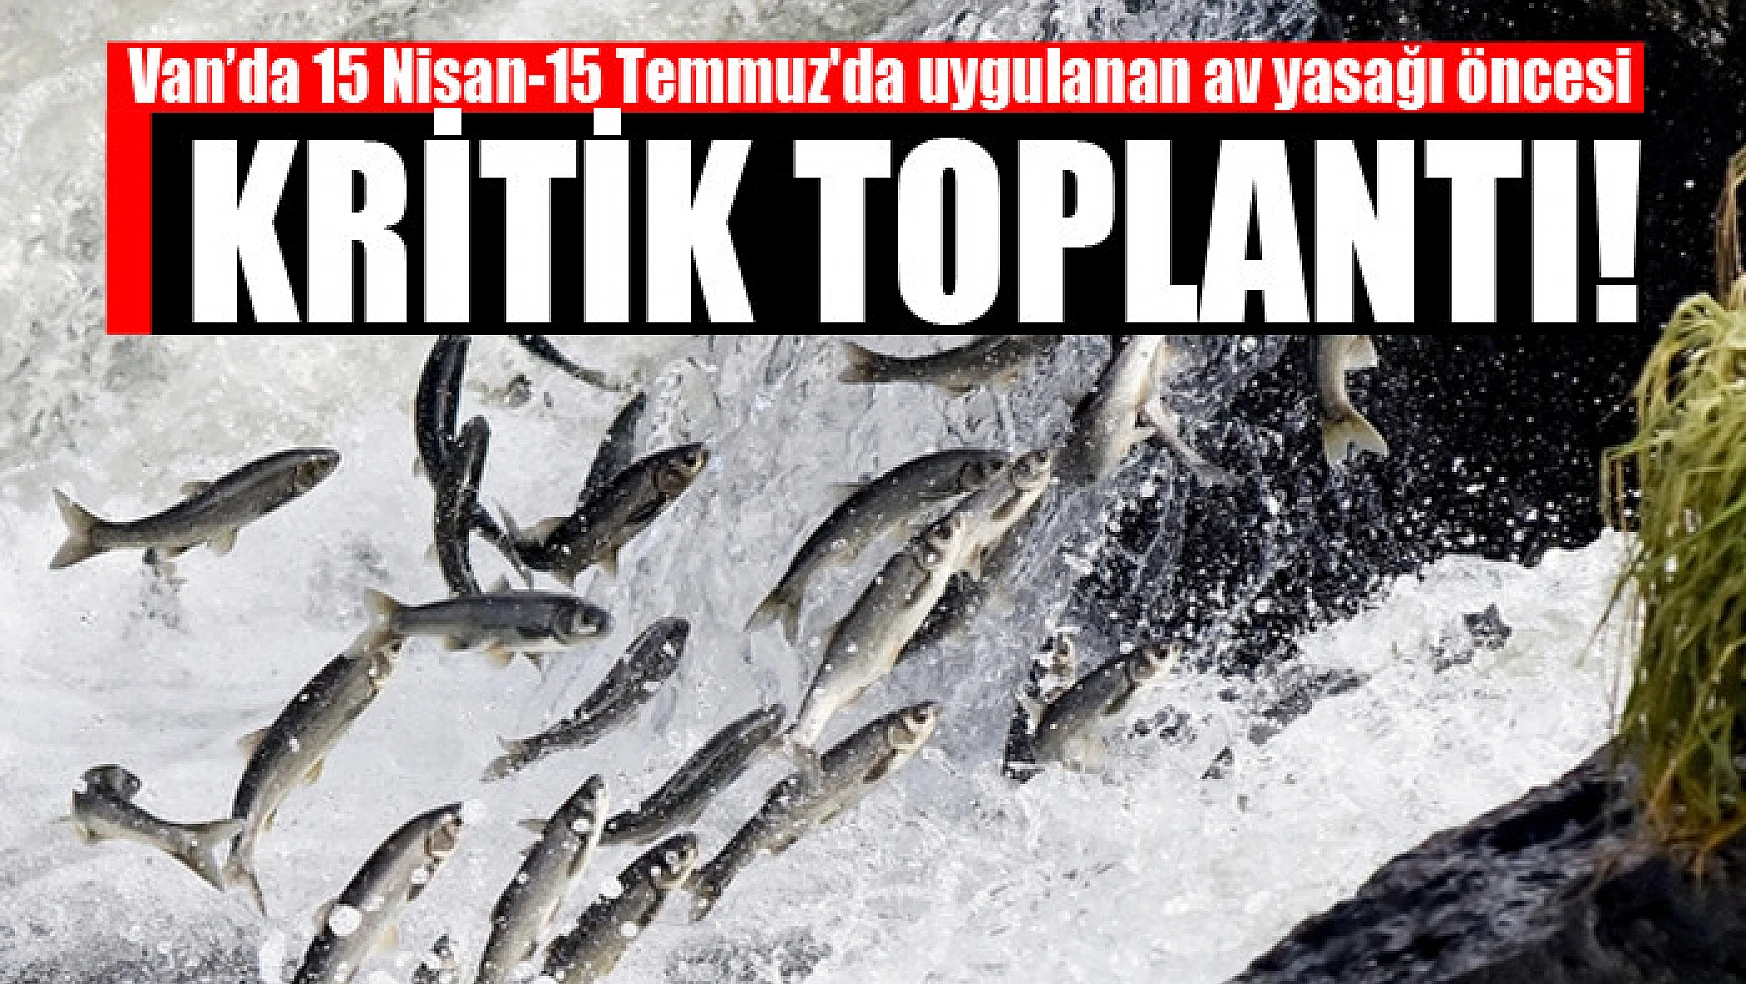 Van balığı av yasağı 15 Nisan'da başlıyor